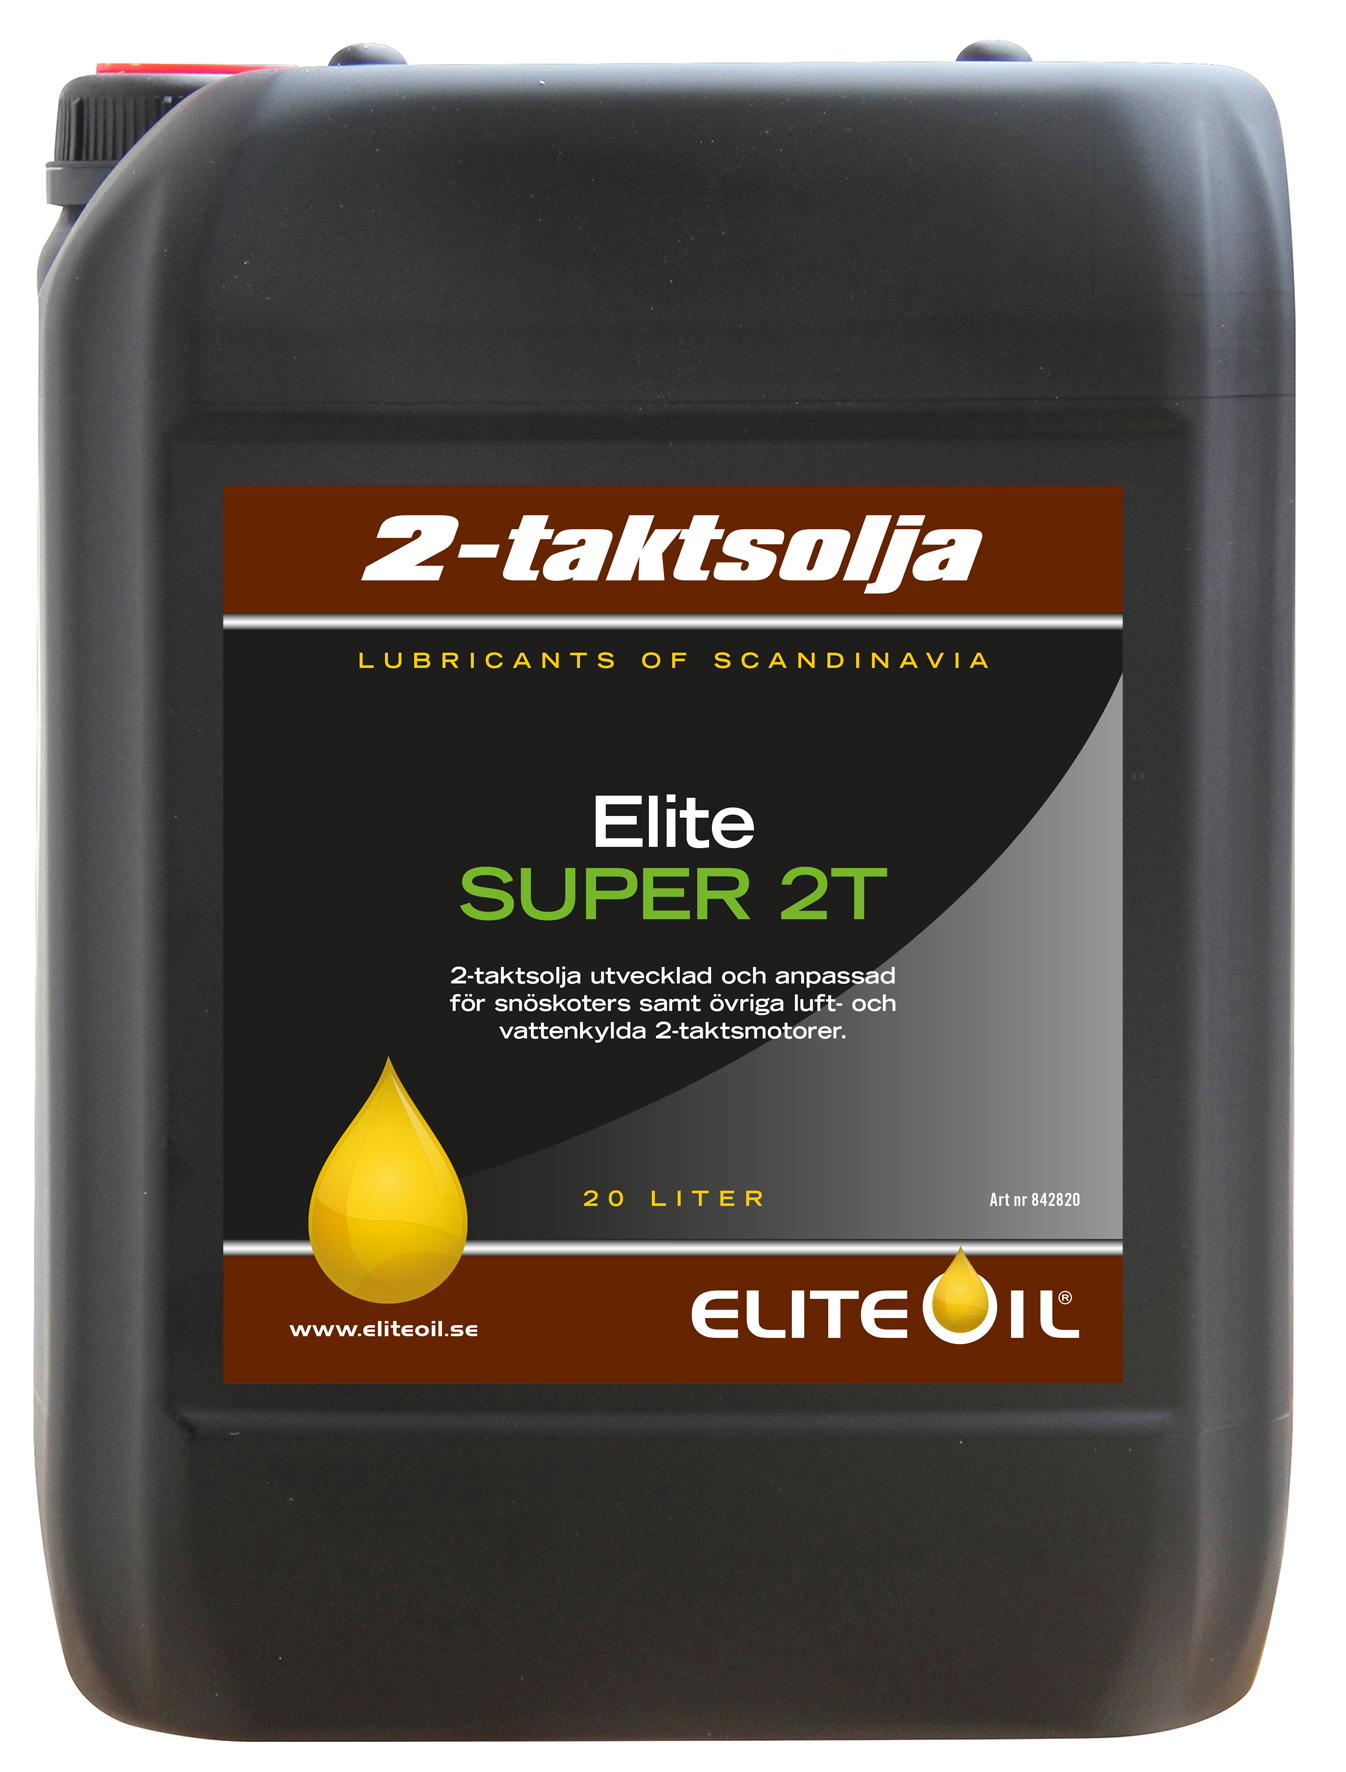 Elite Super 2T, 20 liter dunk-image